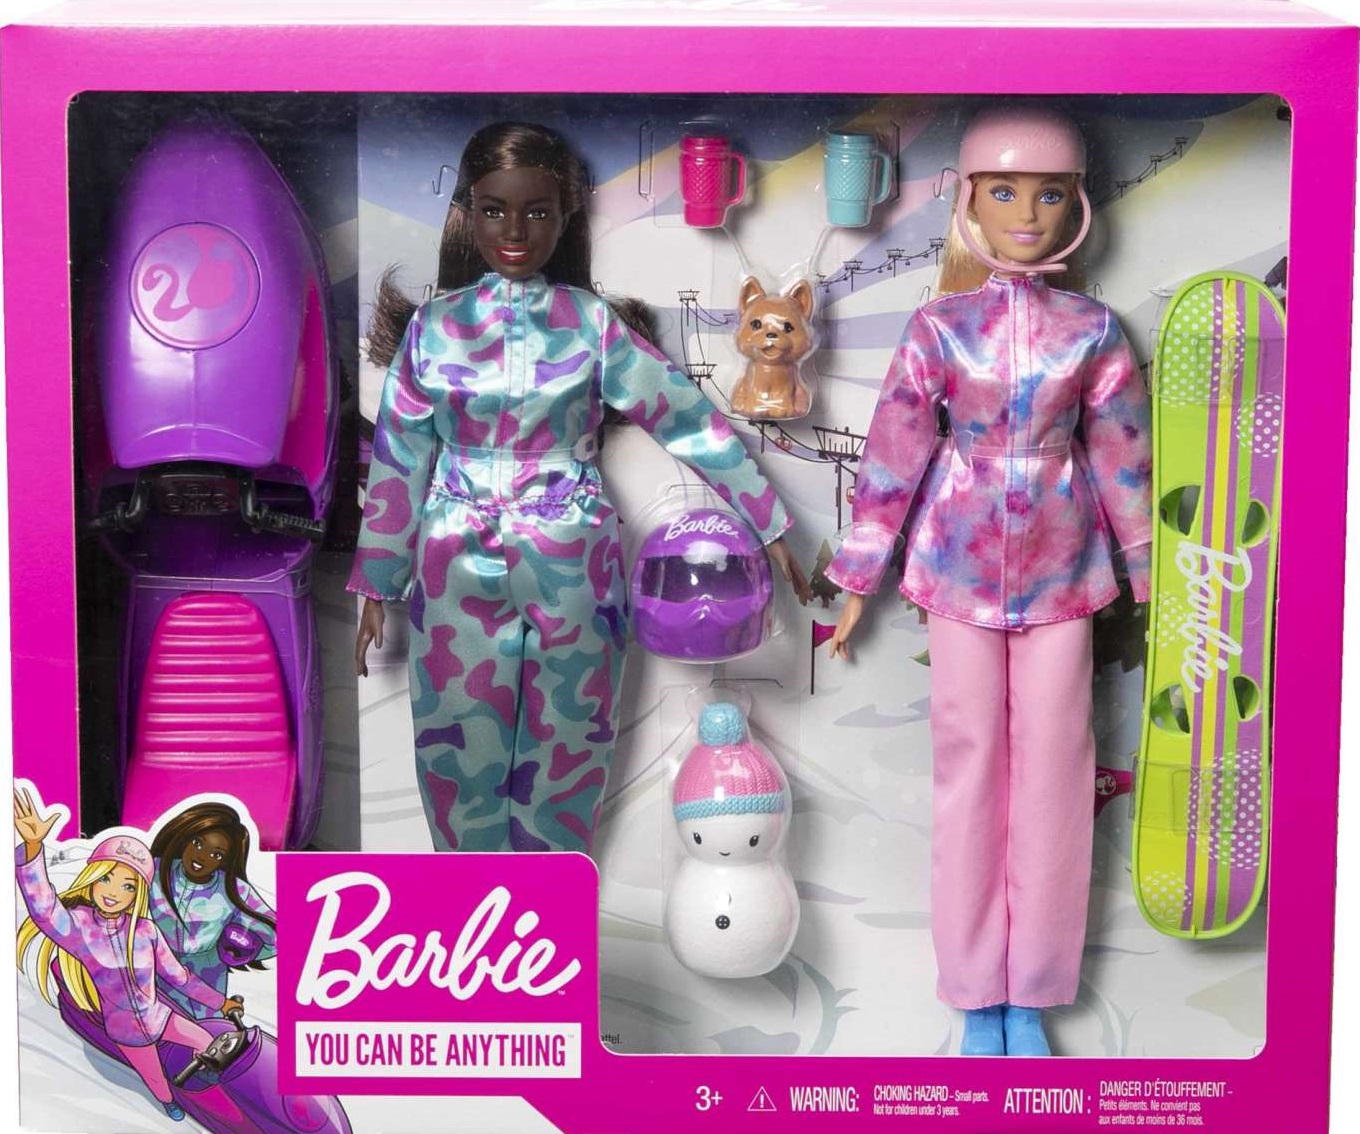 COFFRET POUPÉE Barbie & ACCESSOIRES Peluches & Poupées